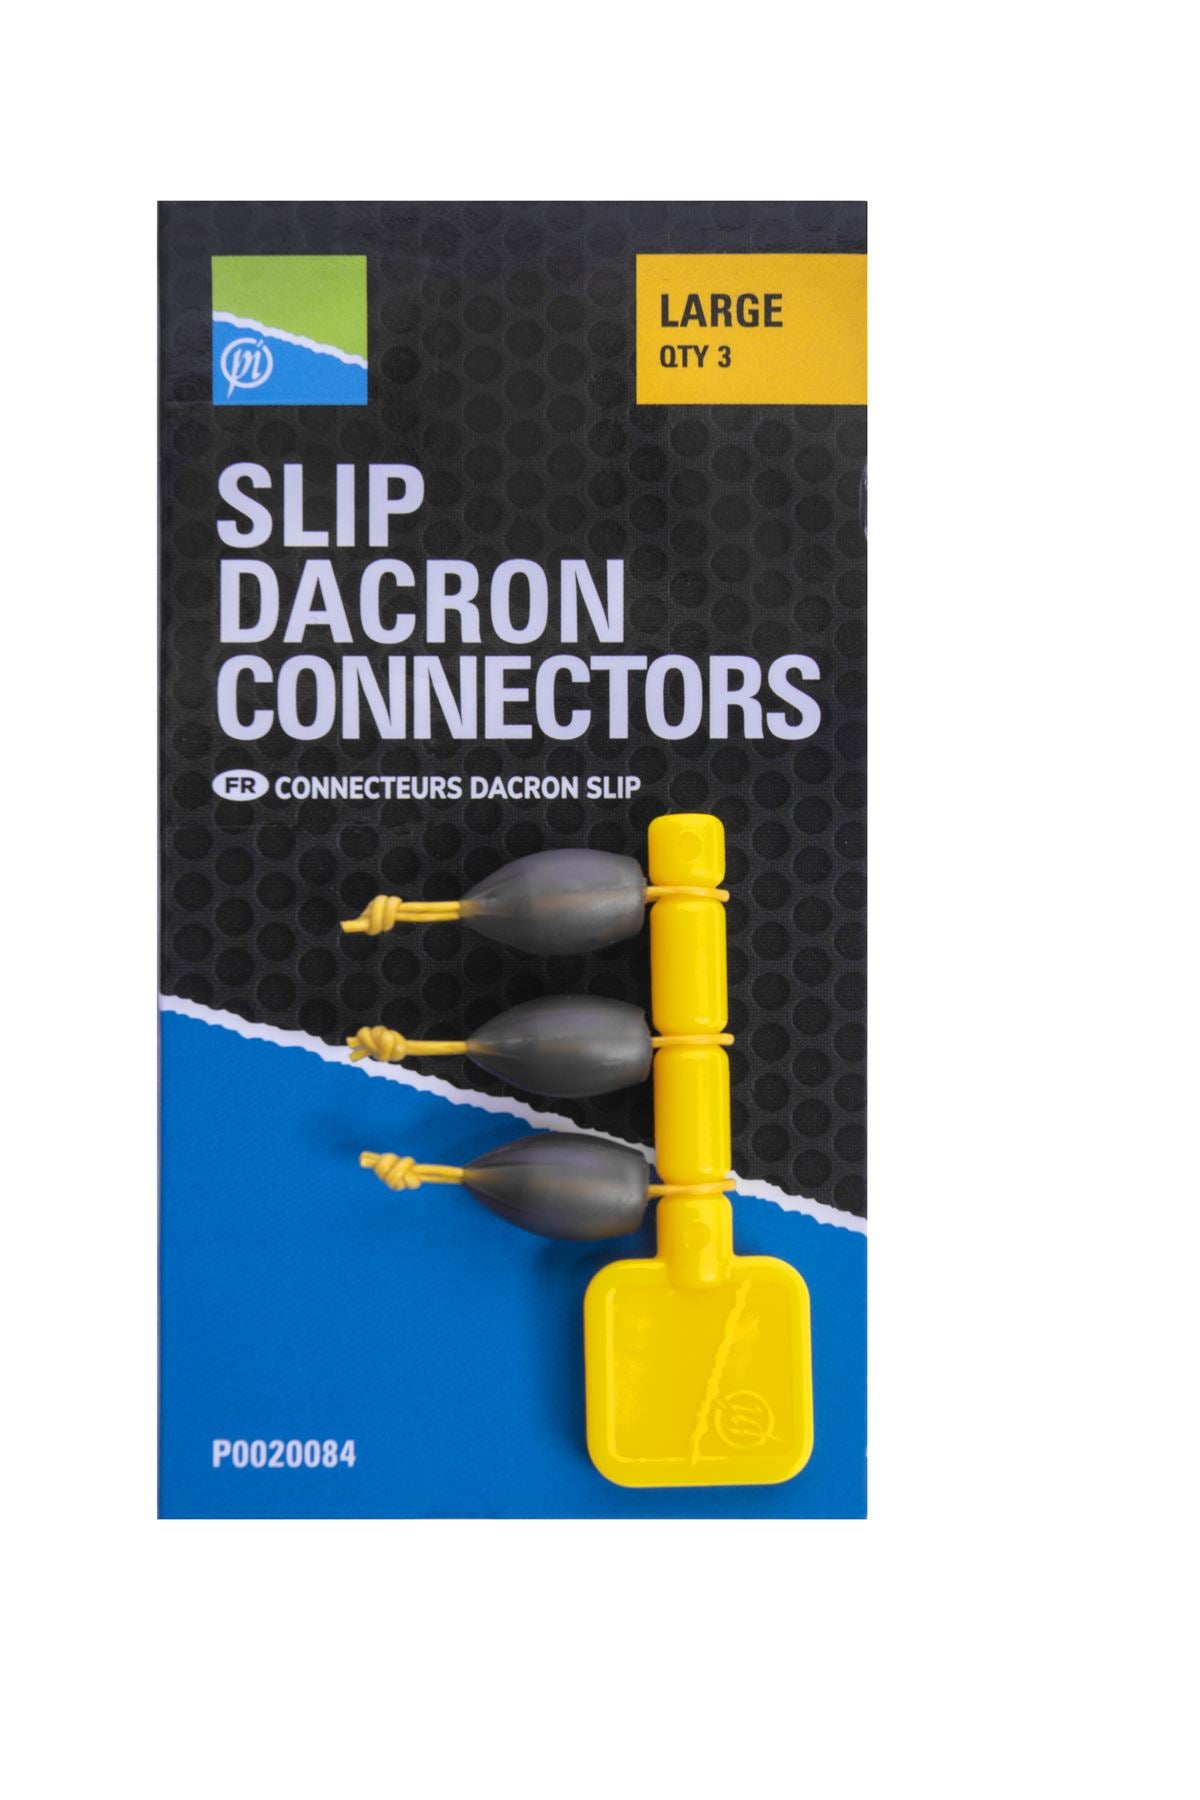 Connecteur Preston Slip Dacron